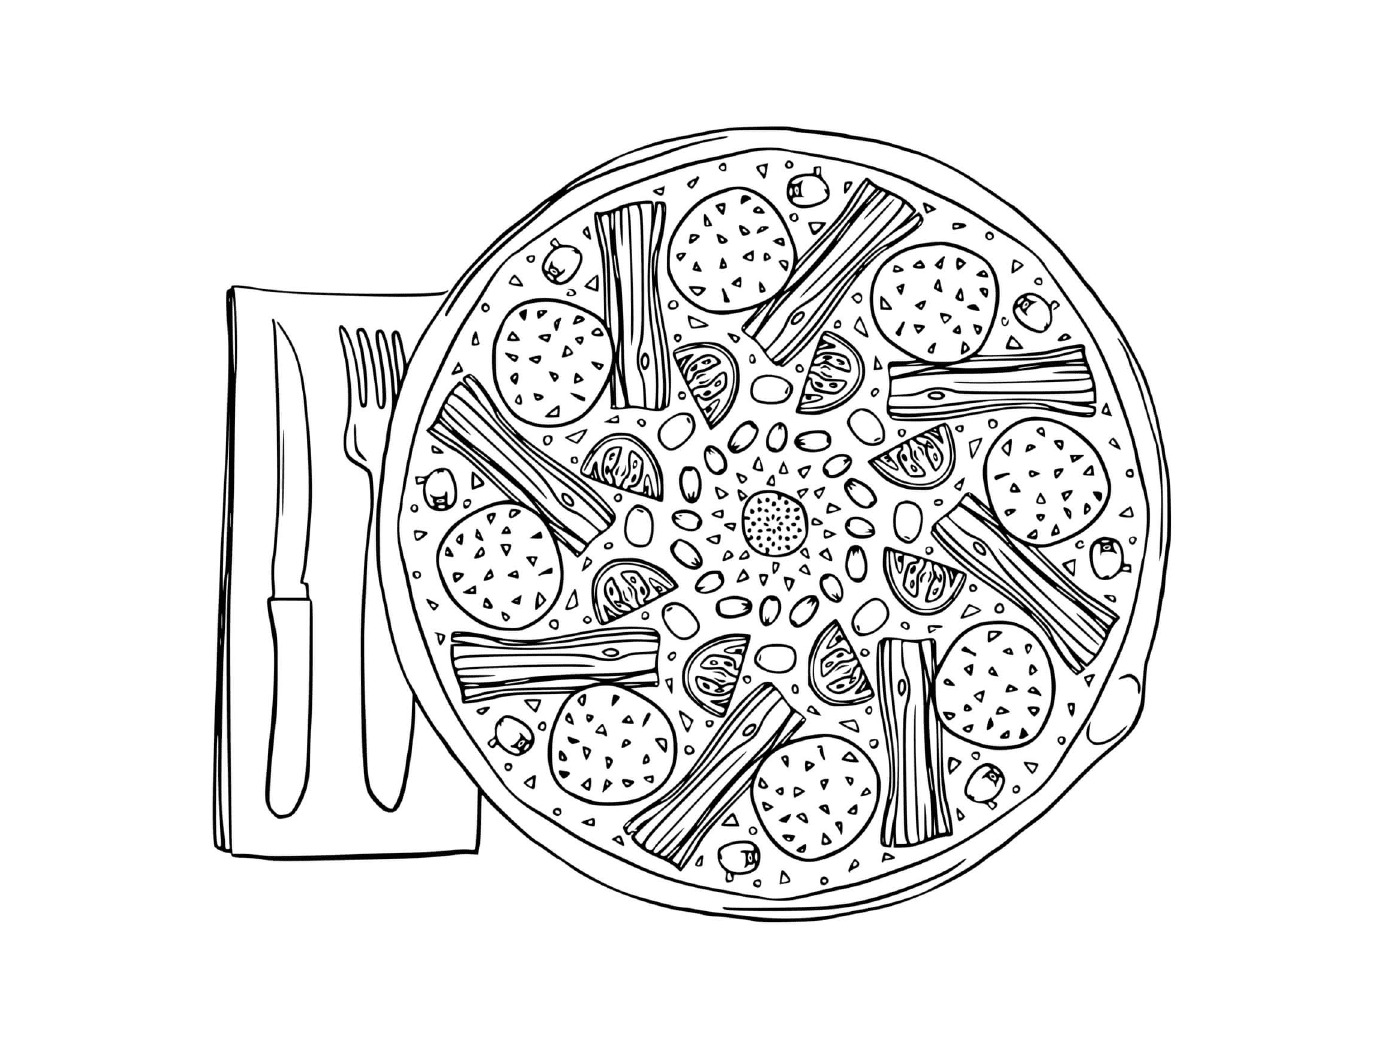  Uma pizza camponesa com espargos 